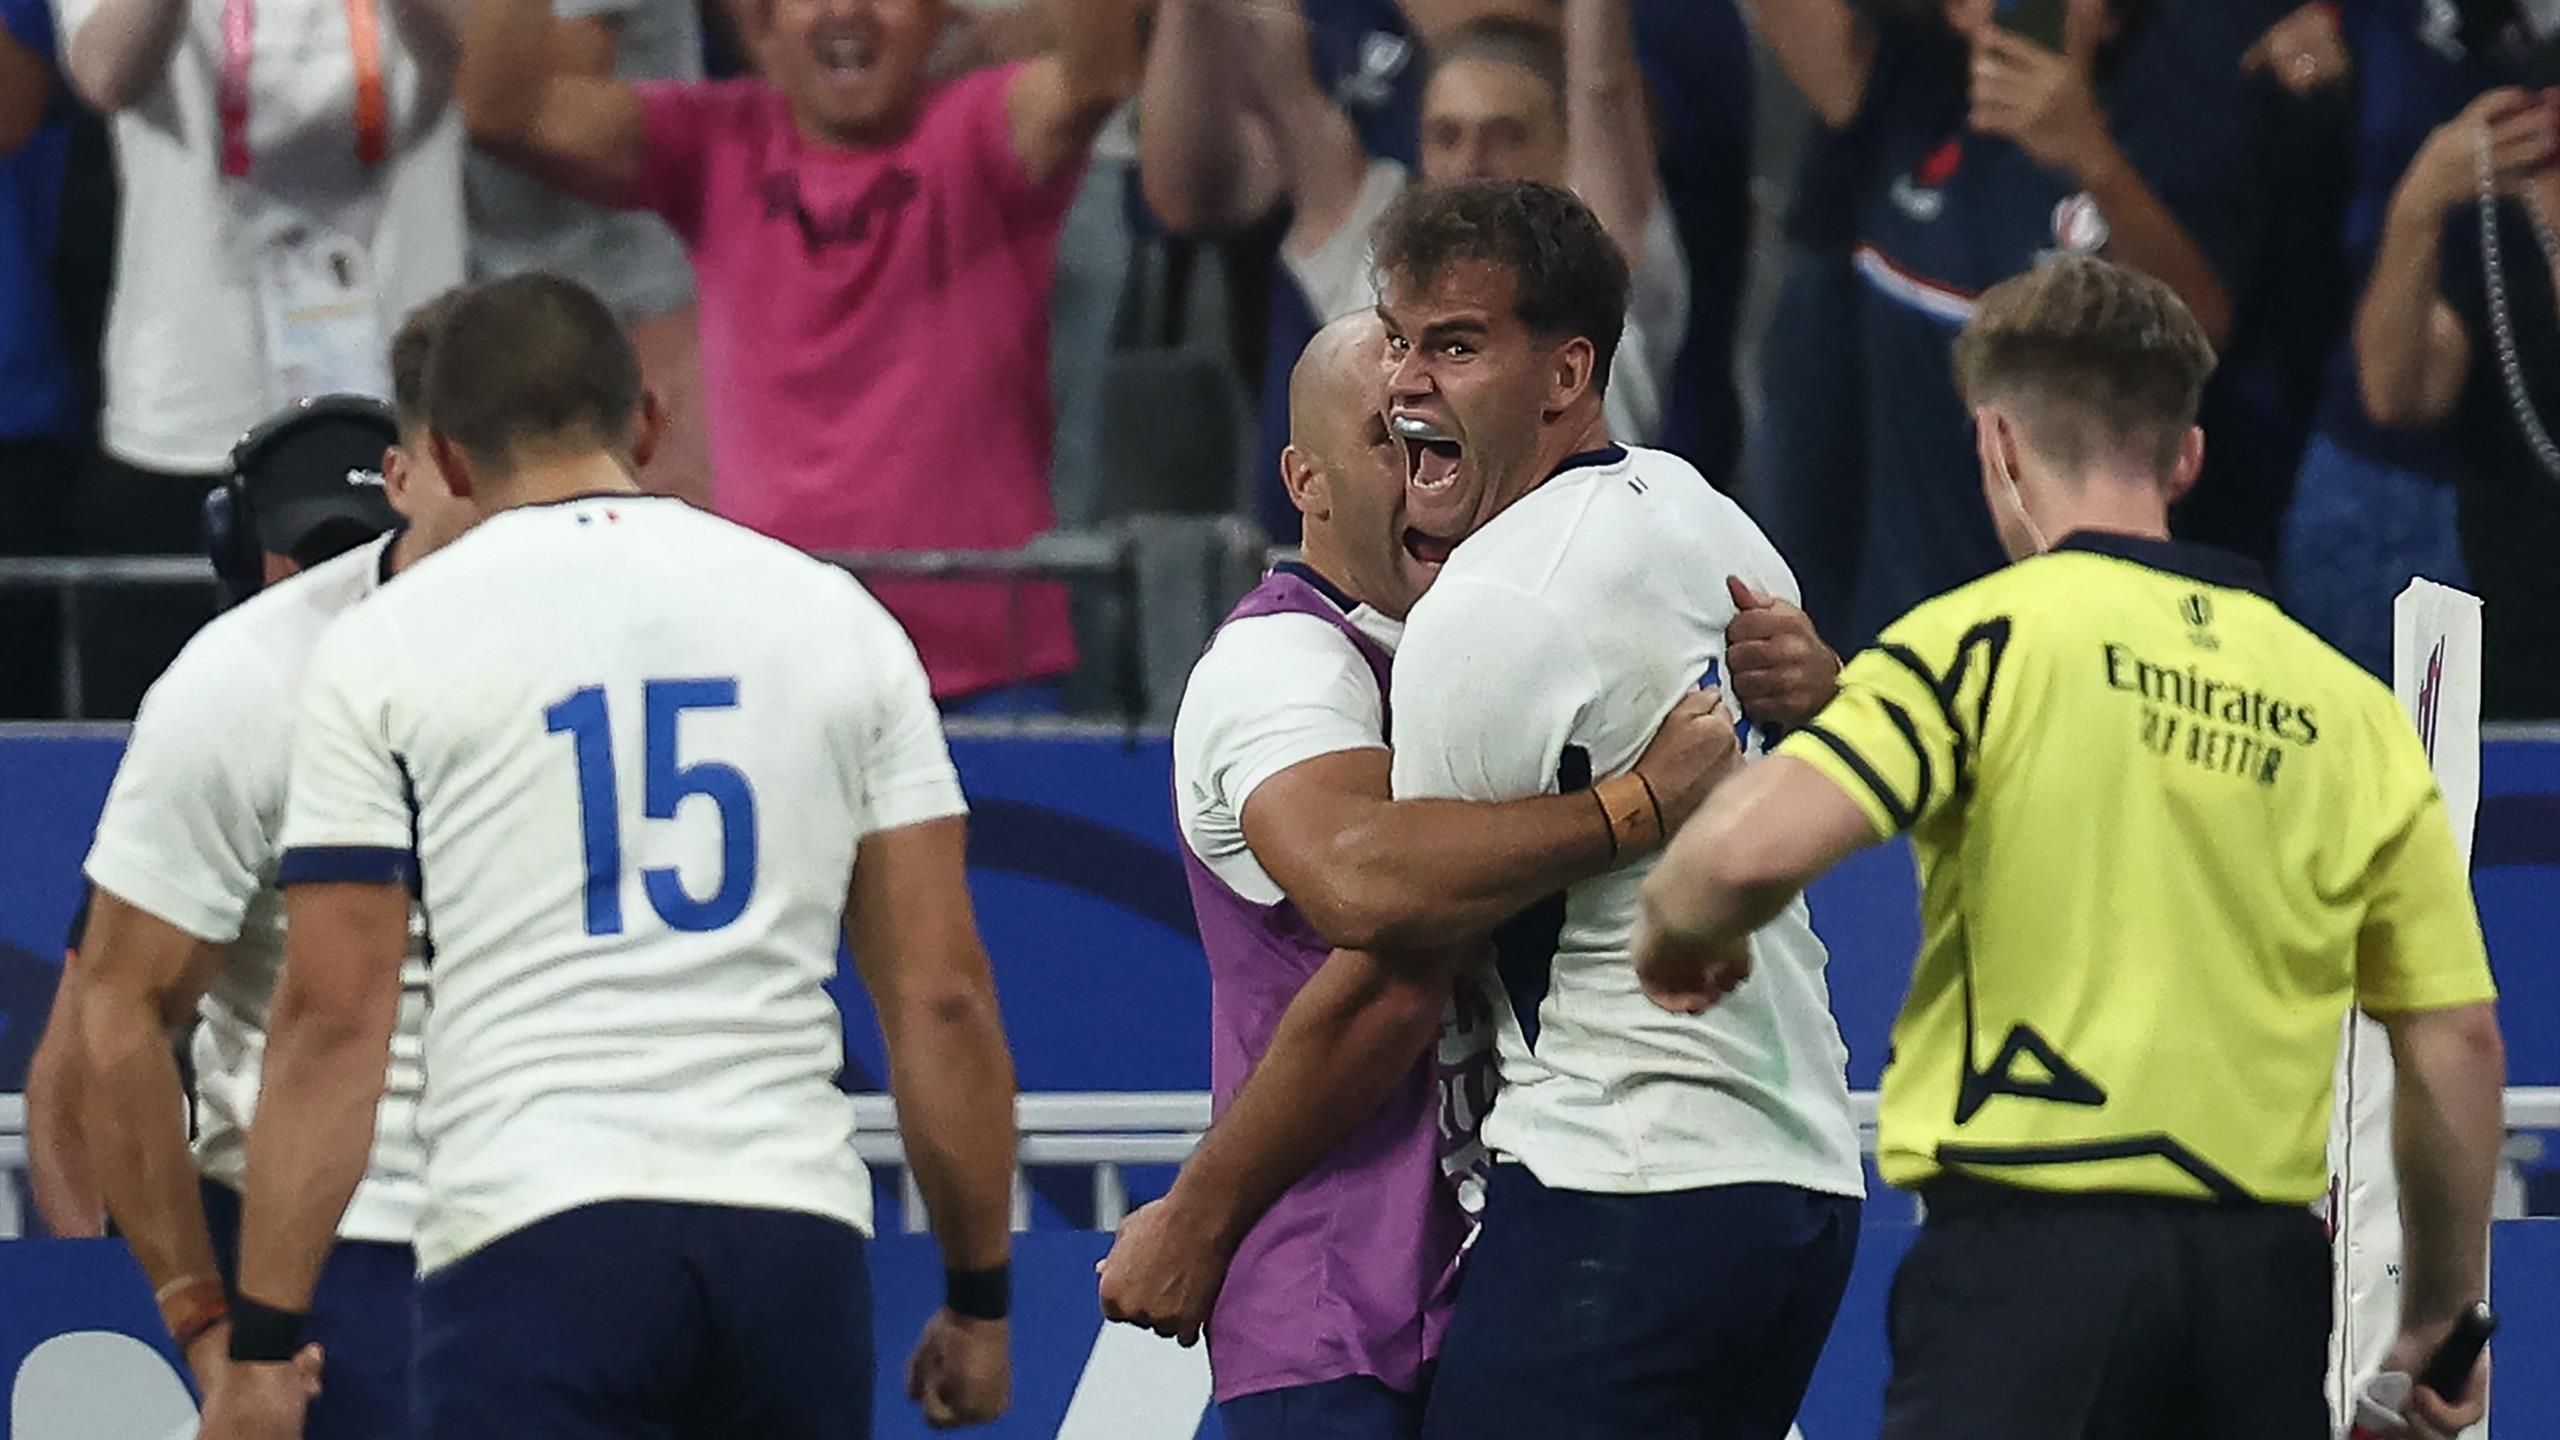 Coupe du Monde de Rugby 2023 – La France, pays hôte, bat la Nouvelle-Zélande dans un match dramatique alors que le tournoi s’ouvre en beauté